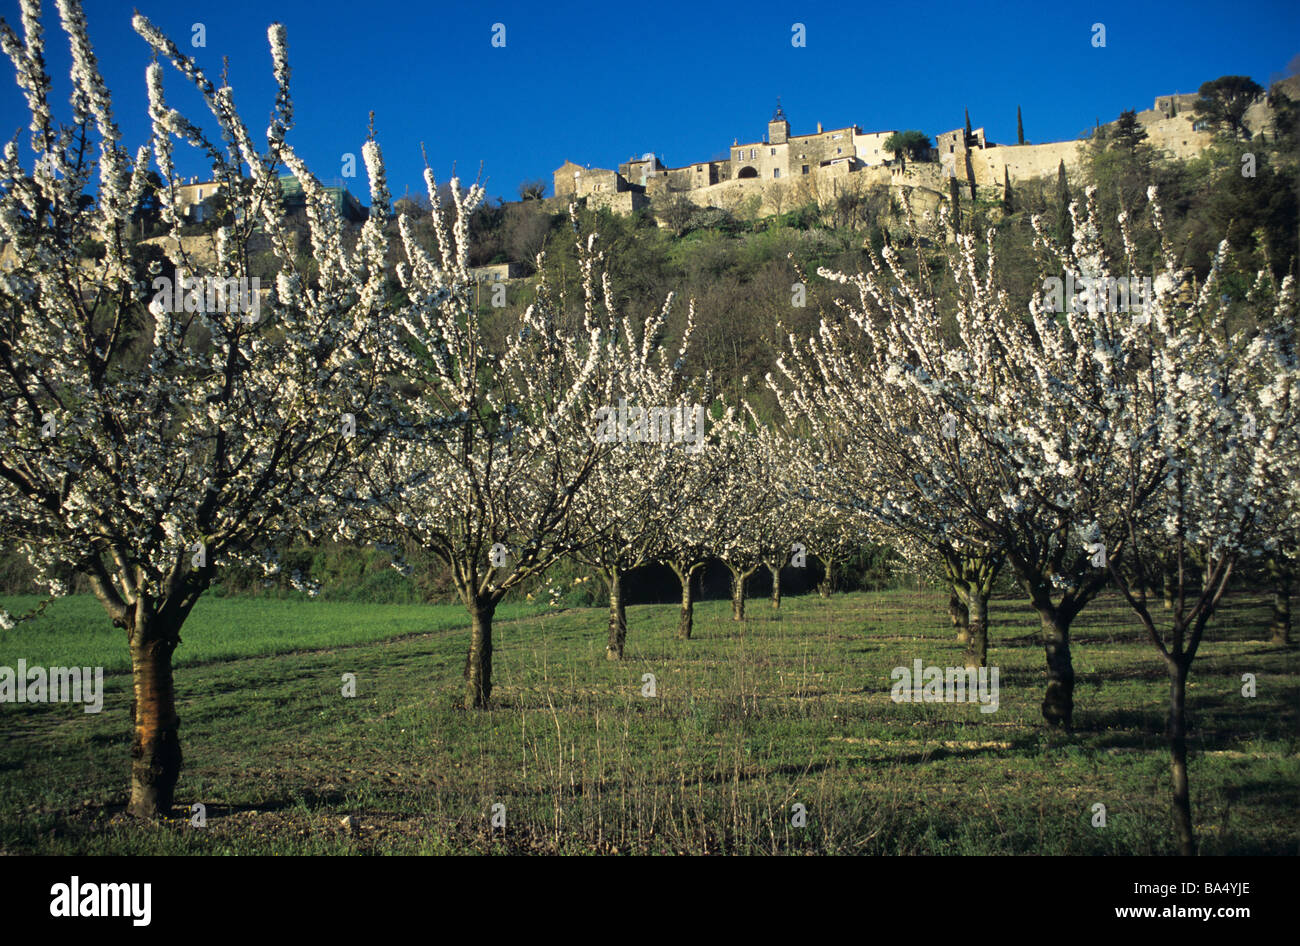 Printemps verger ou Cerisiers en fleurs & Village perché de Ménerbes dans le Luberon, Provence, France Banque D'Images